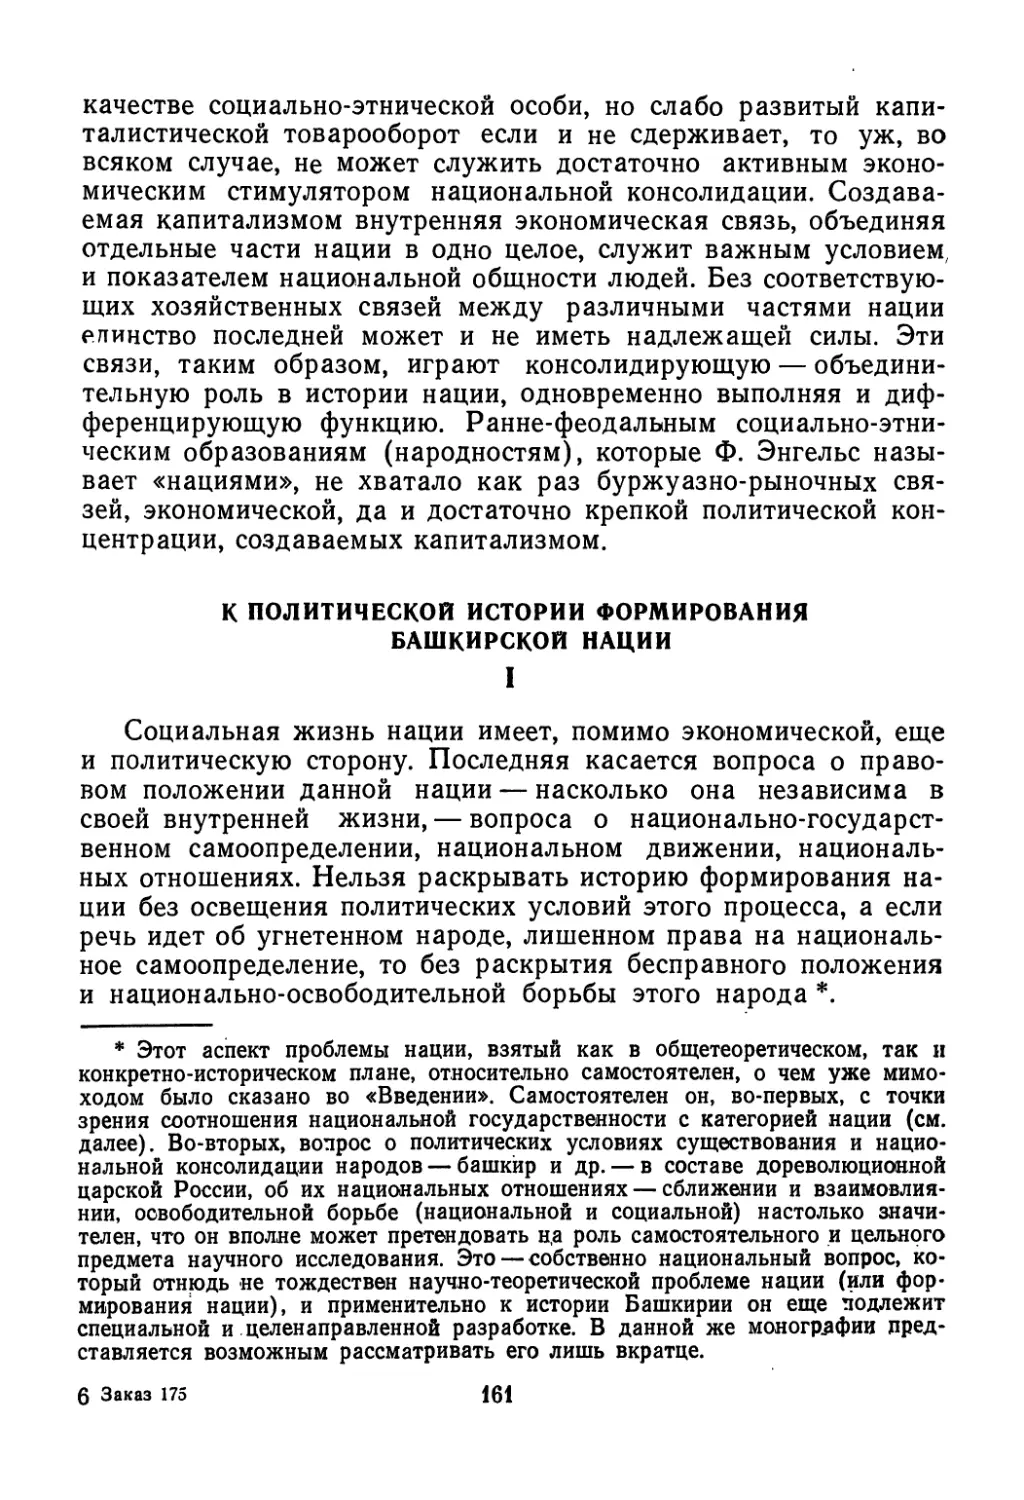 К политической истории формирования башкирской нации